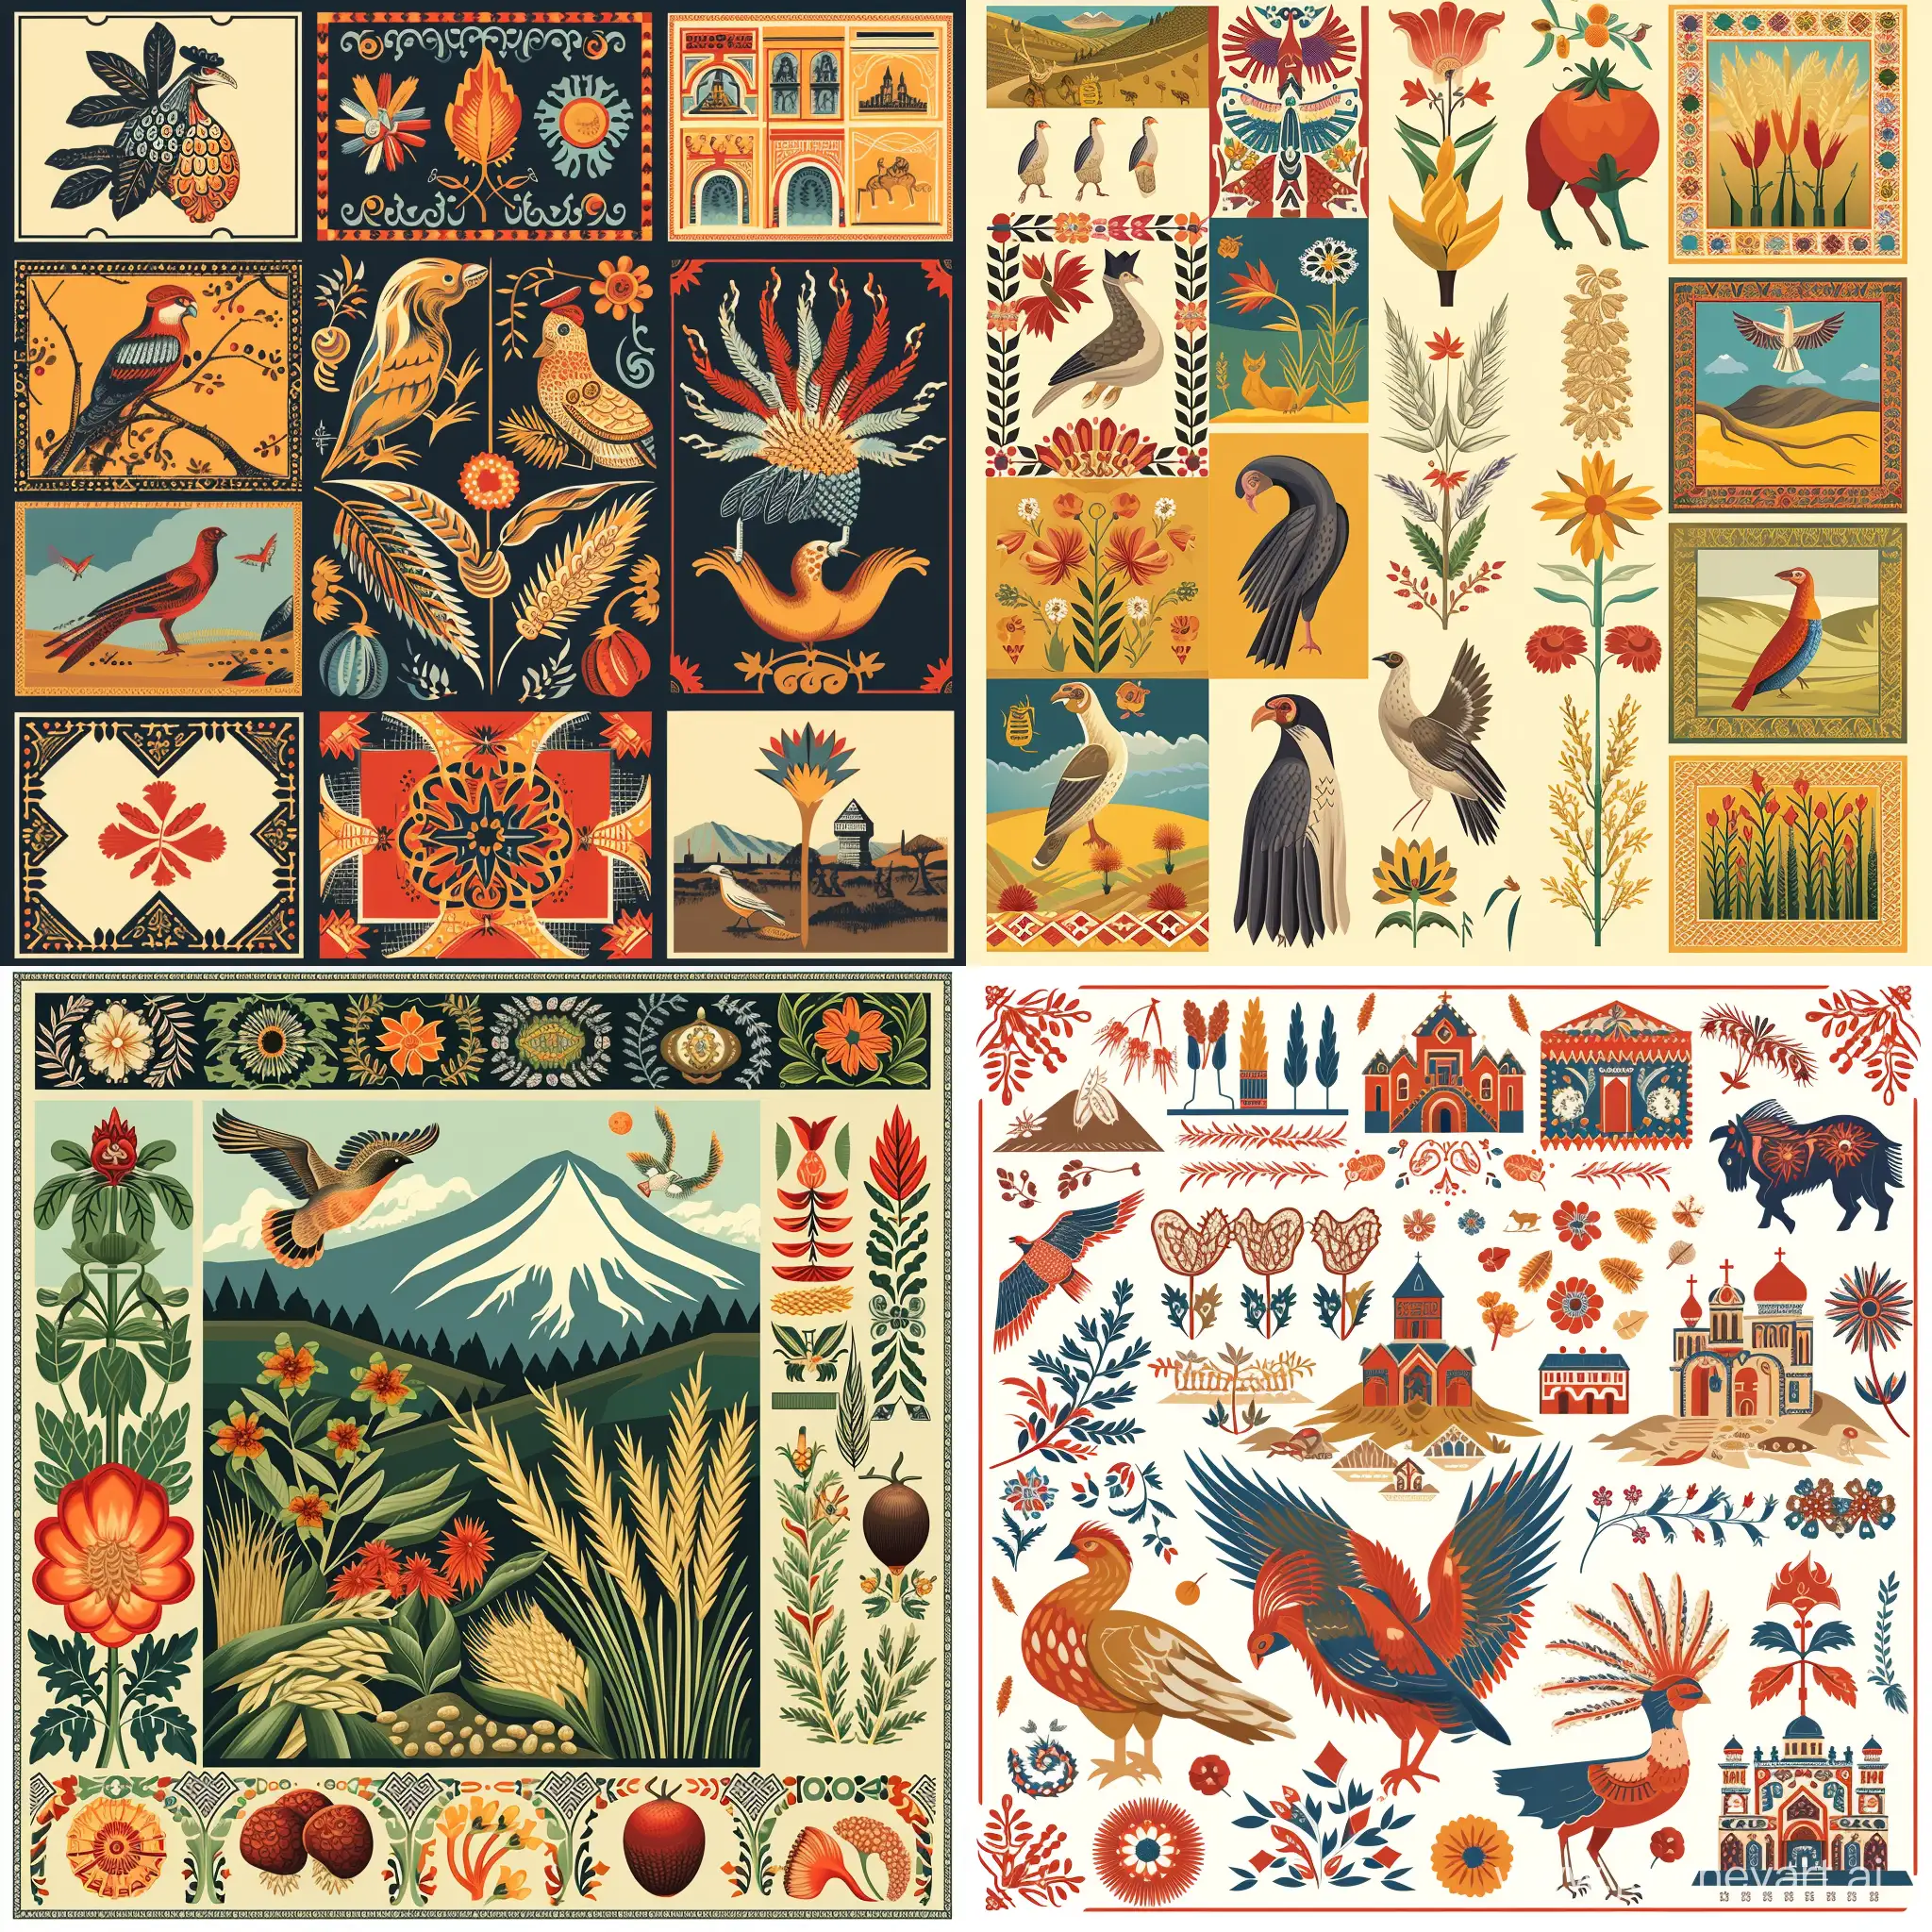 Дизайн-шаблон для этикеток крупы из Армении может включать в себя традиционные армянские узоры и орнаменты, а также изображения местной флоры и фауны. Яркие цвета и узнаваемые символы армянской культуры могут быть использованы для создания привлекательного дизайна.